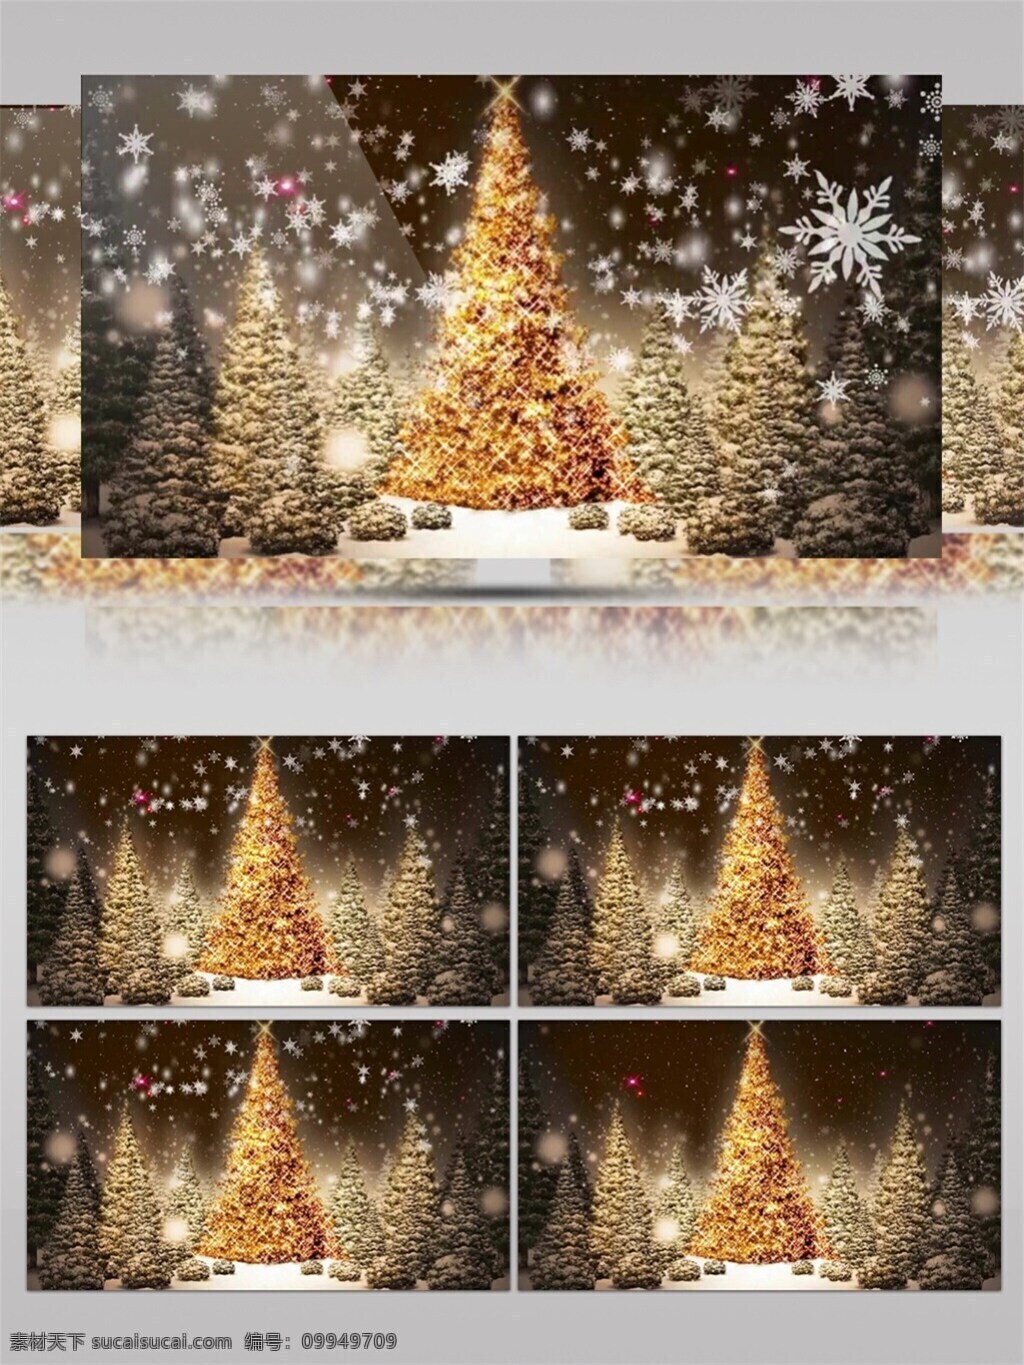 金色 圣诞树 圣诞节 视频 华丽圣诞树 节日壁纸 节日 特效 平安夜 炫酷金色